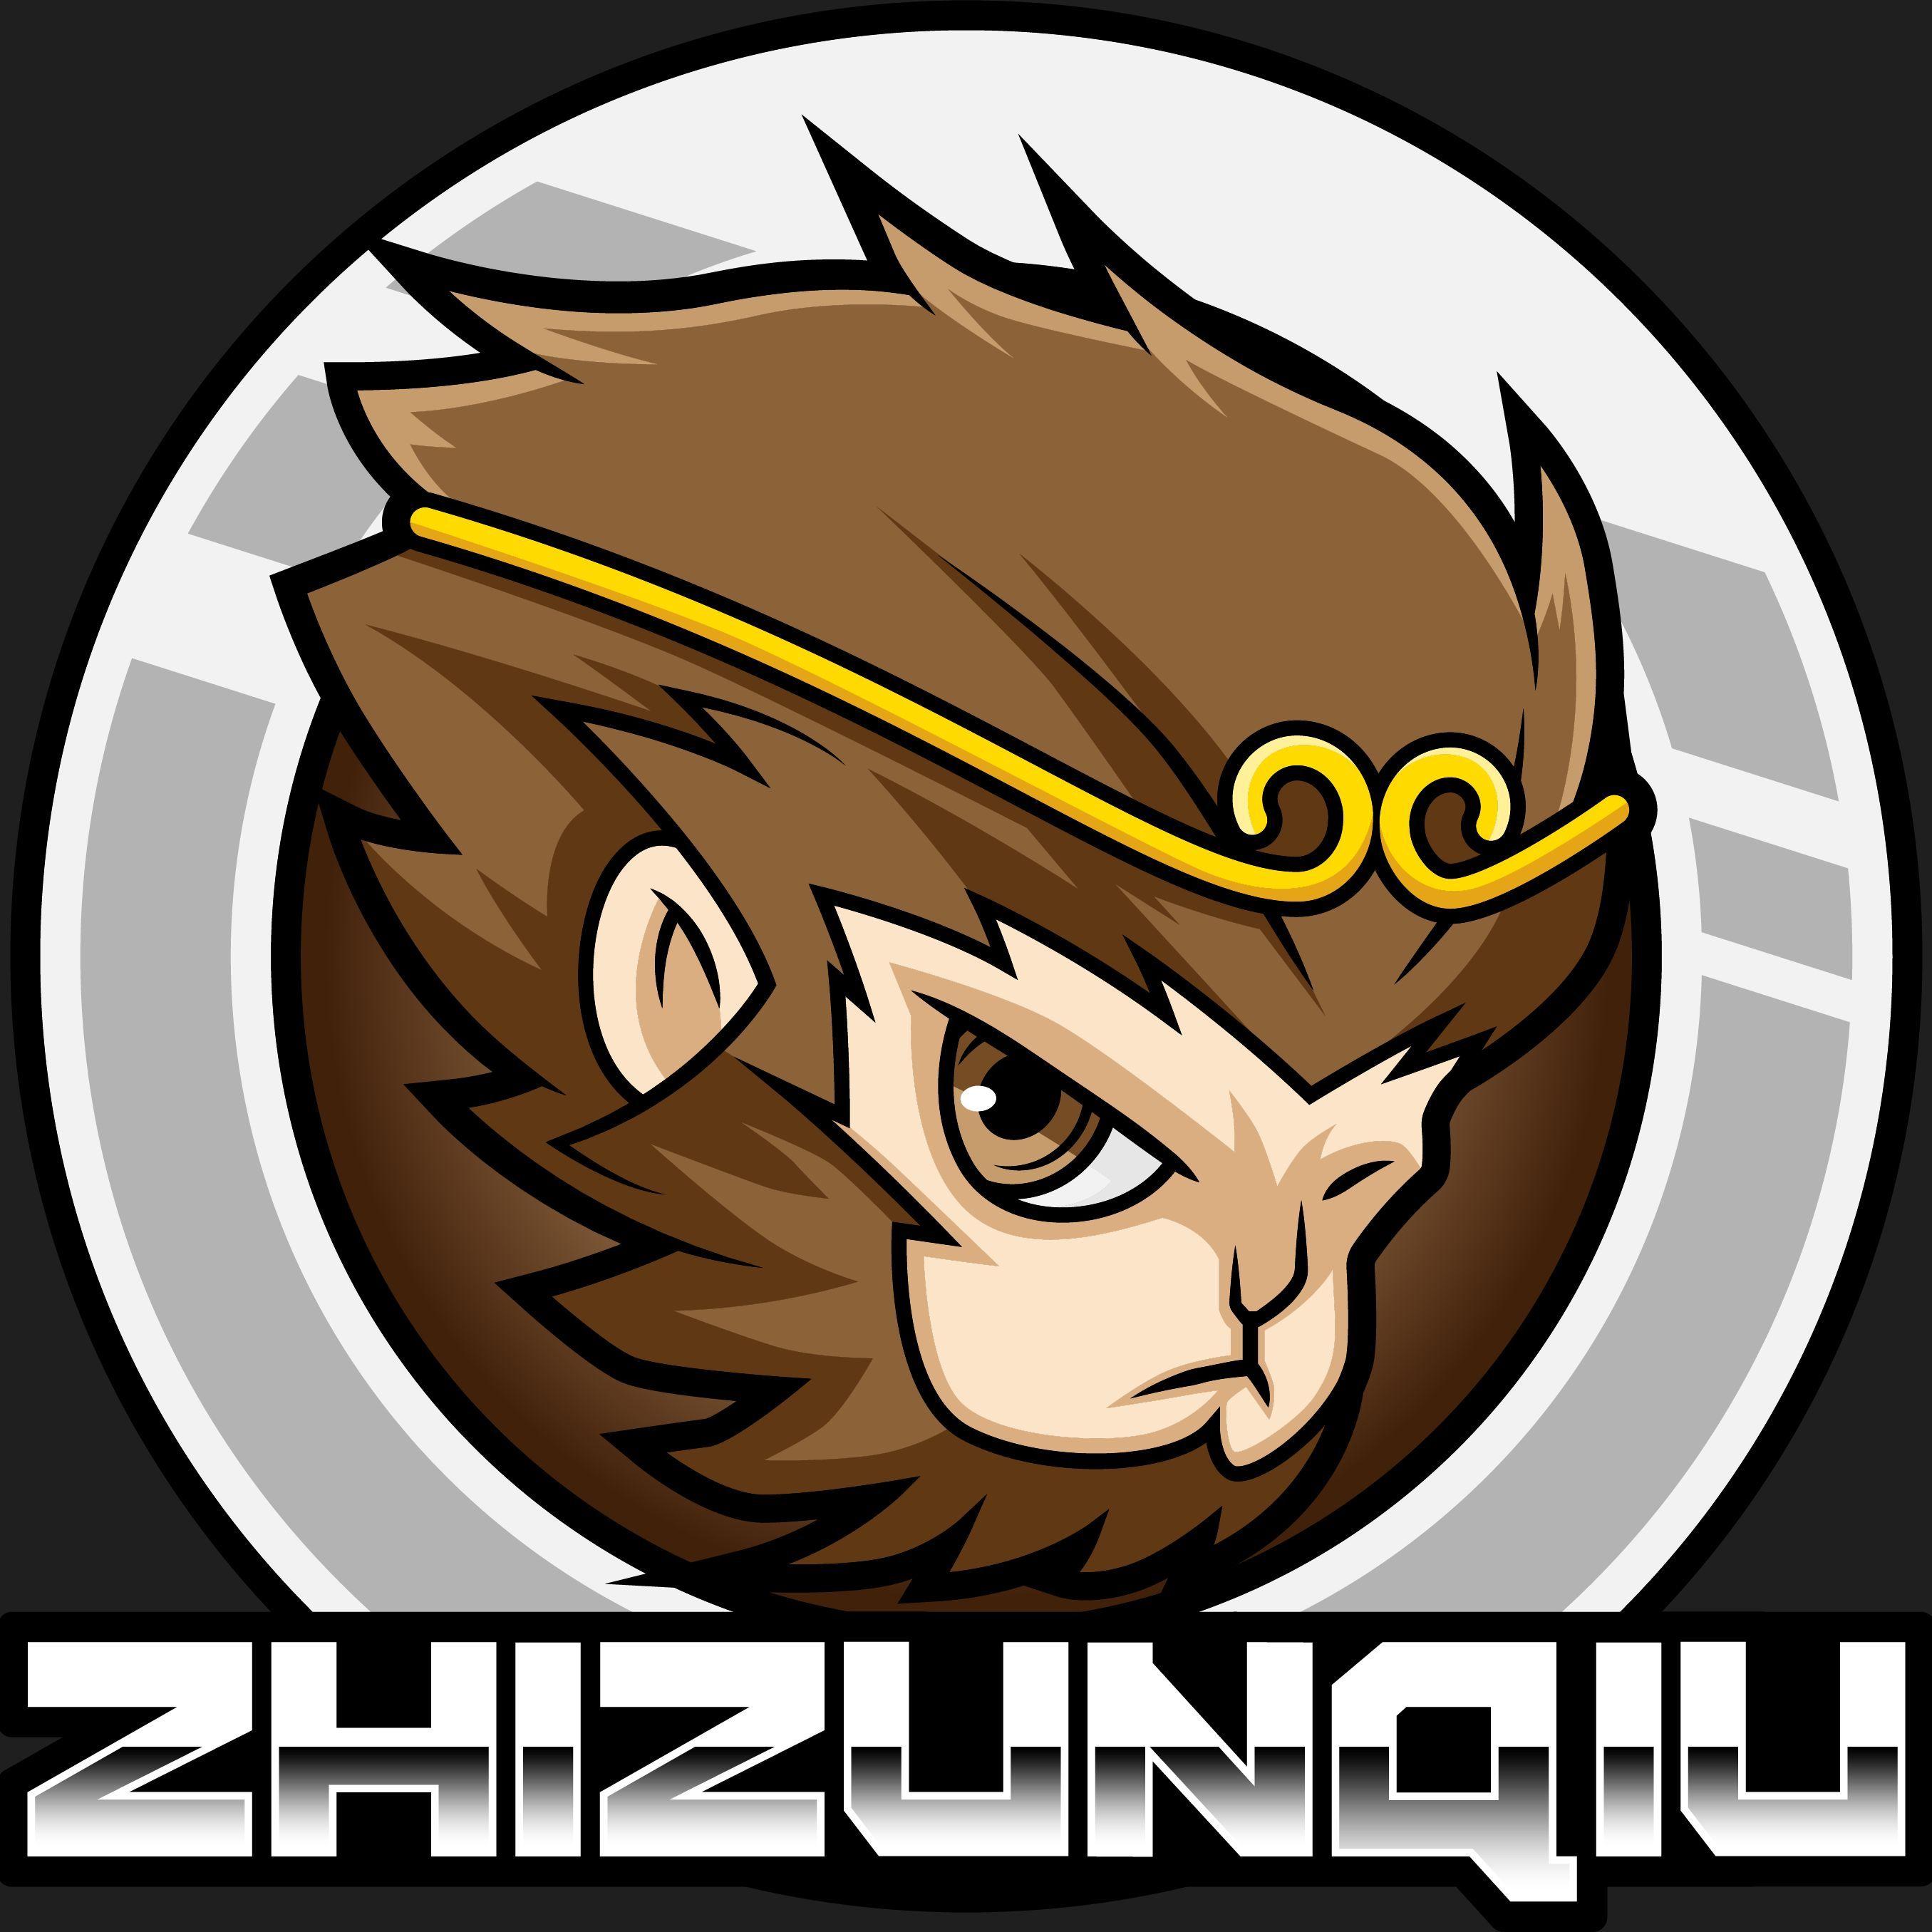 Player zhizunqiu avatar